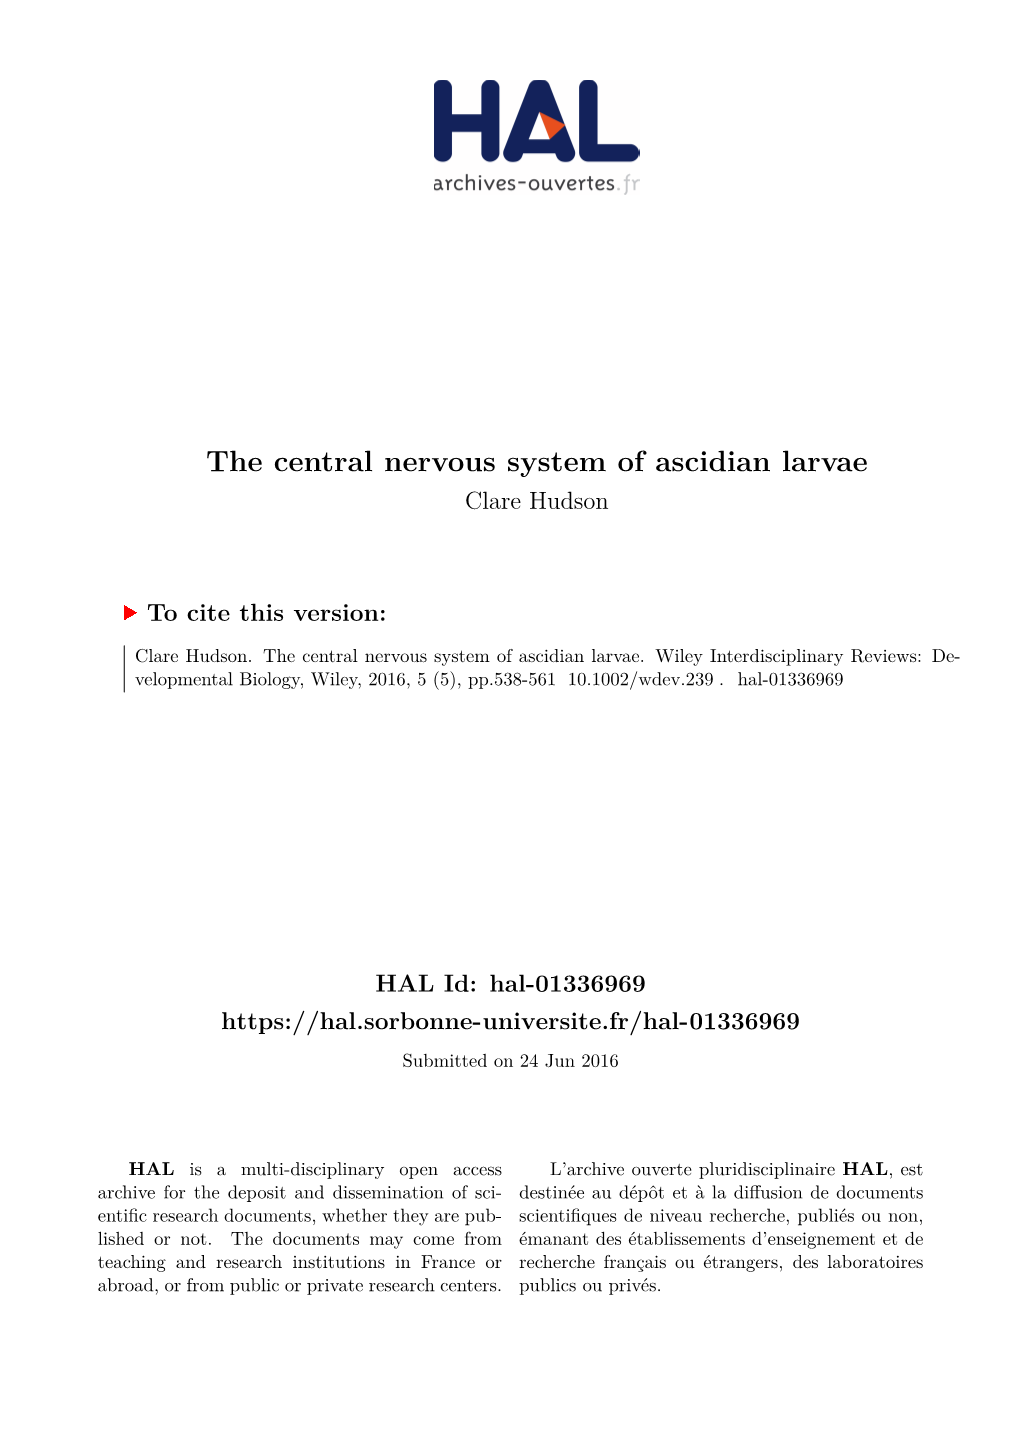 The Central Nervous System of Ascidian Larvae Clare Hudson